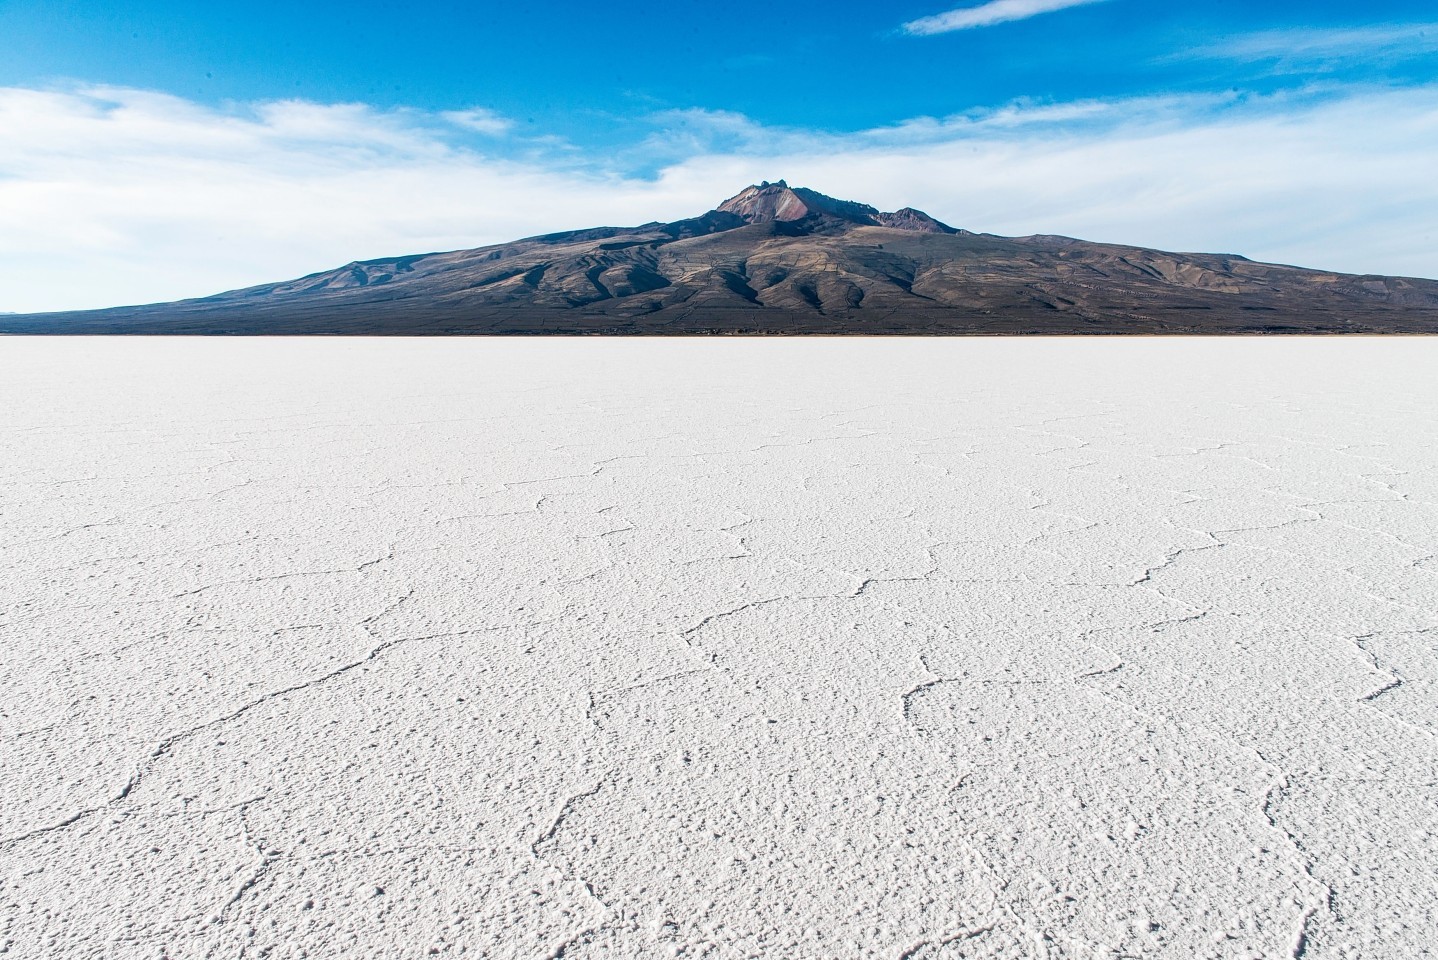 Tunapu Volcano and Uyuni salt flat, Bolivia